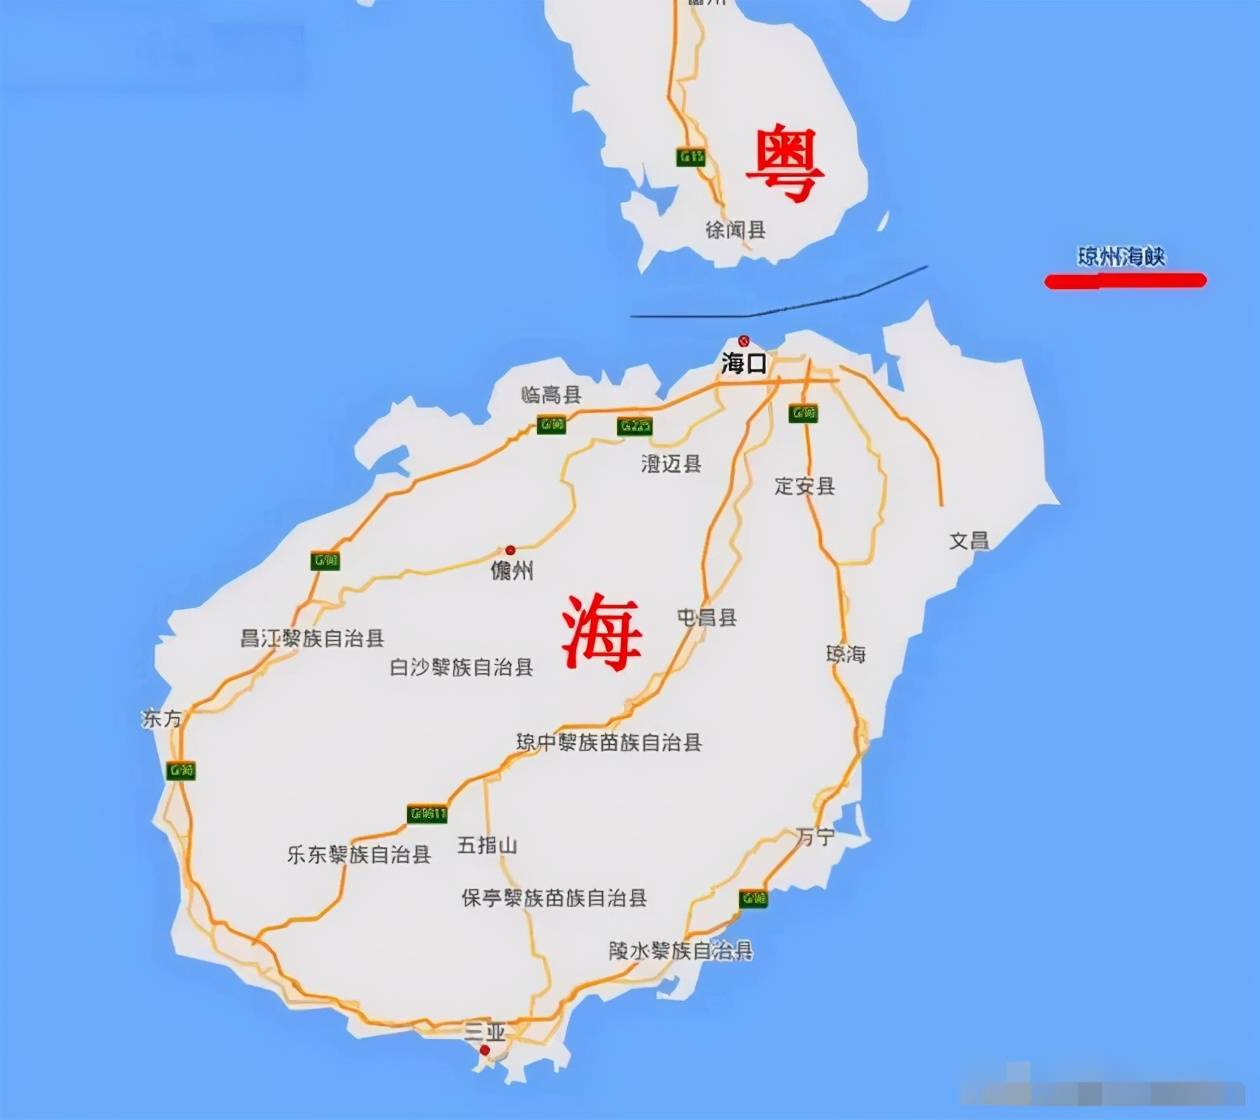 海南跟广东最近距离才19.4公里,为什么不建造一座跨海